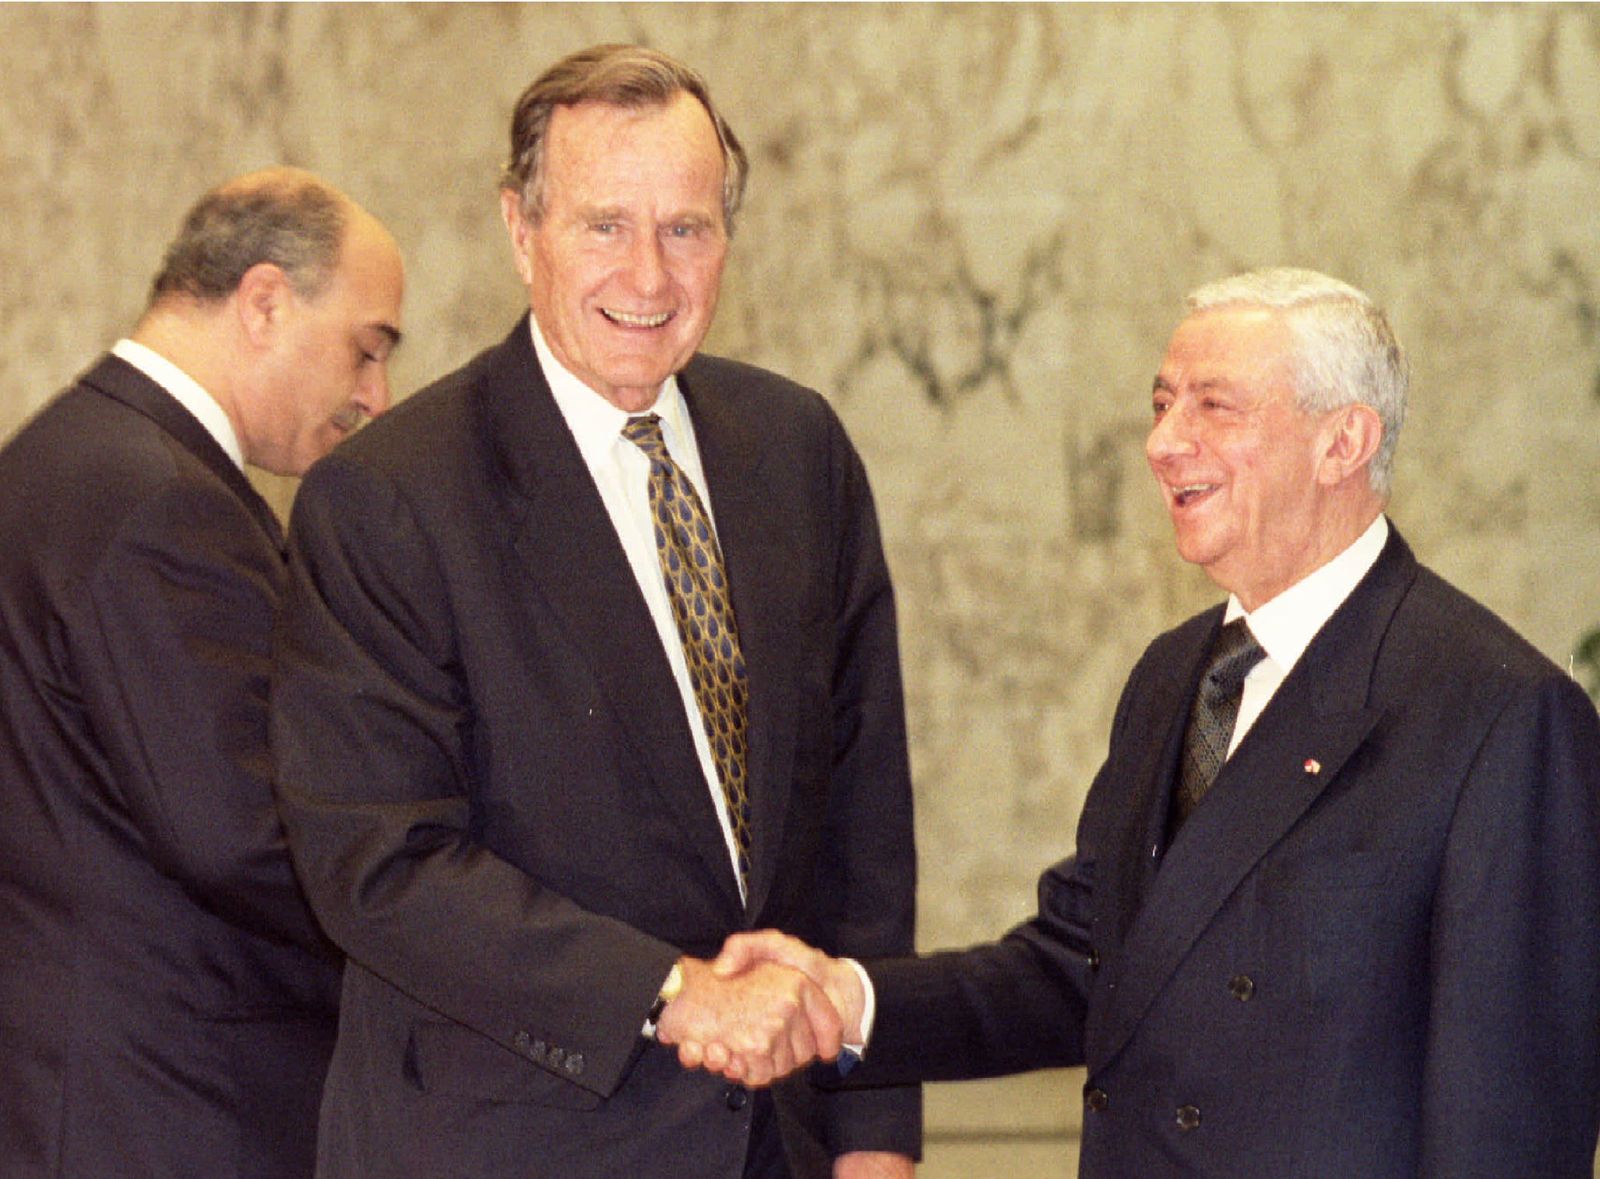 الرئيس اللبناني الراحل إلياس الهراوي خلال لقاء مع الرئيس الأميركي الراحل جورج بوش في بيروت- 26 مارس 1983 - X00237